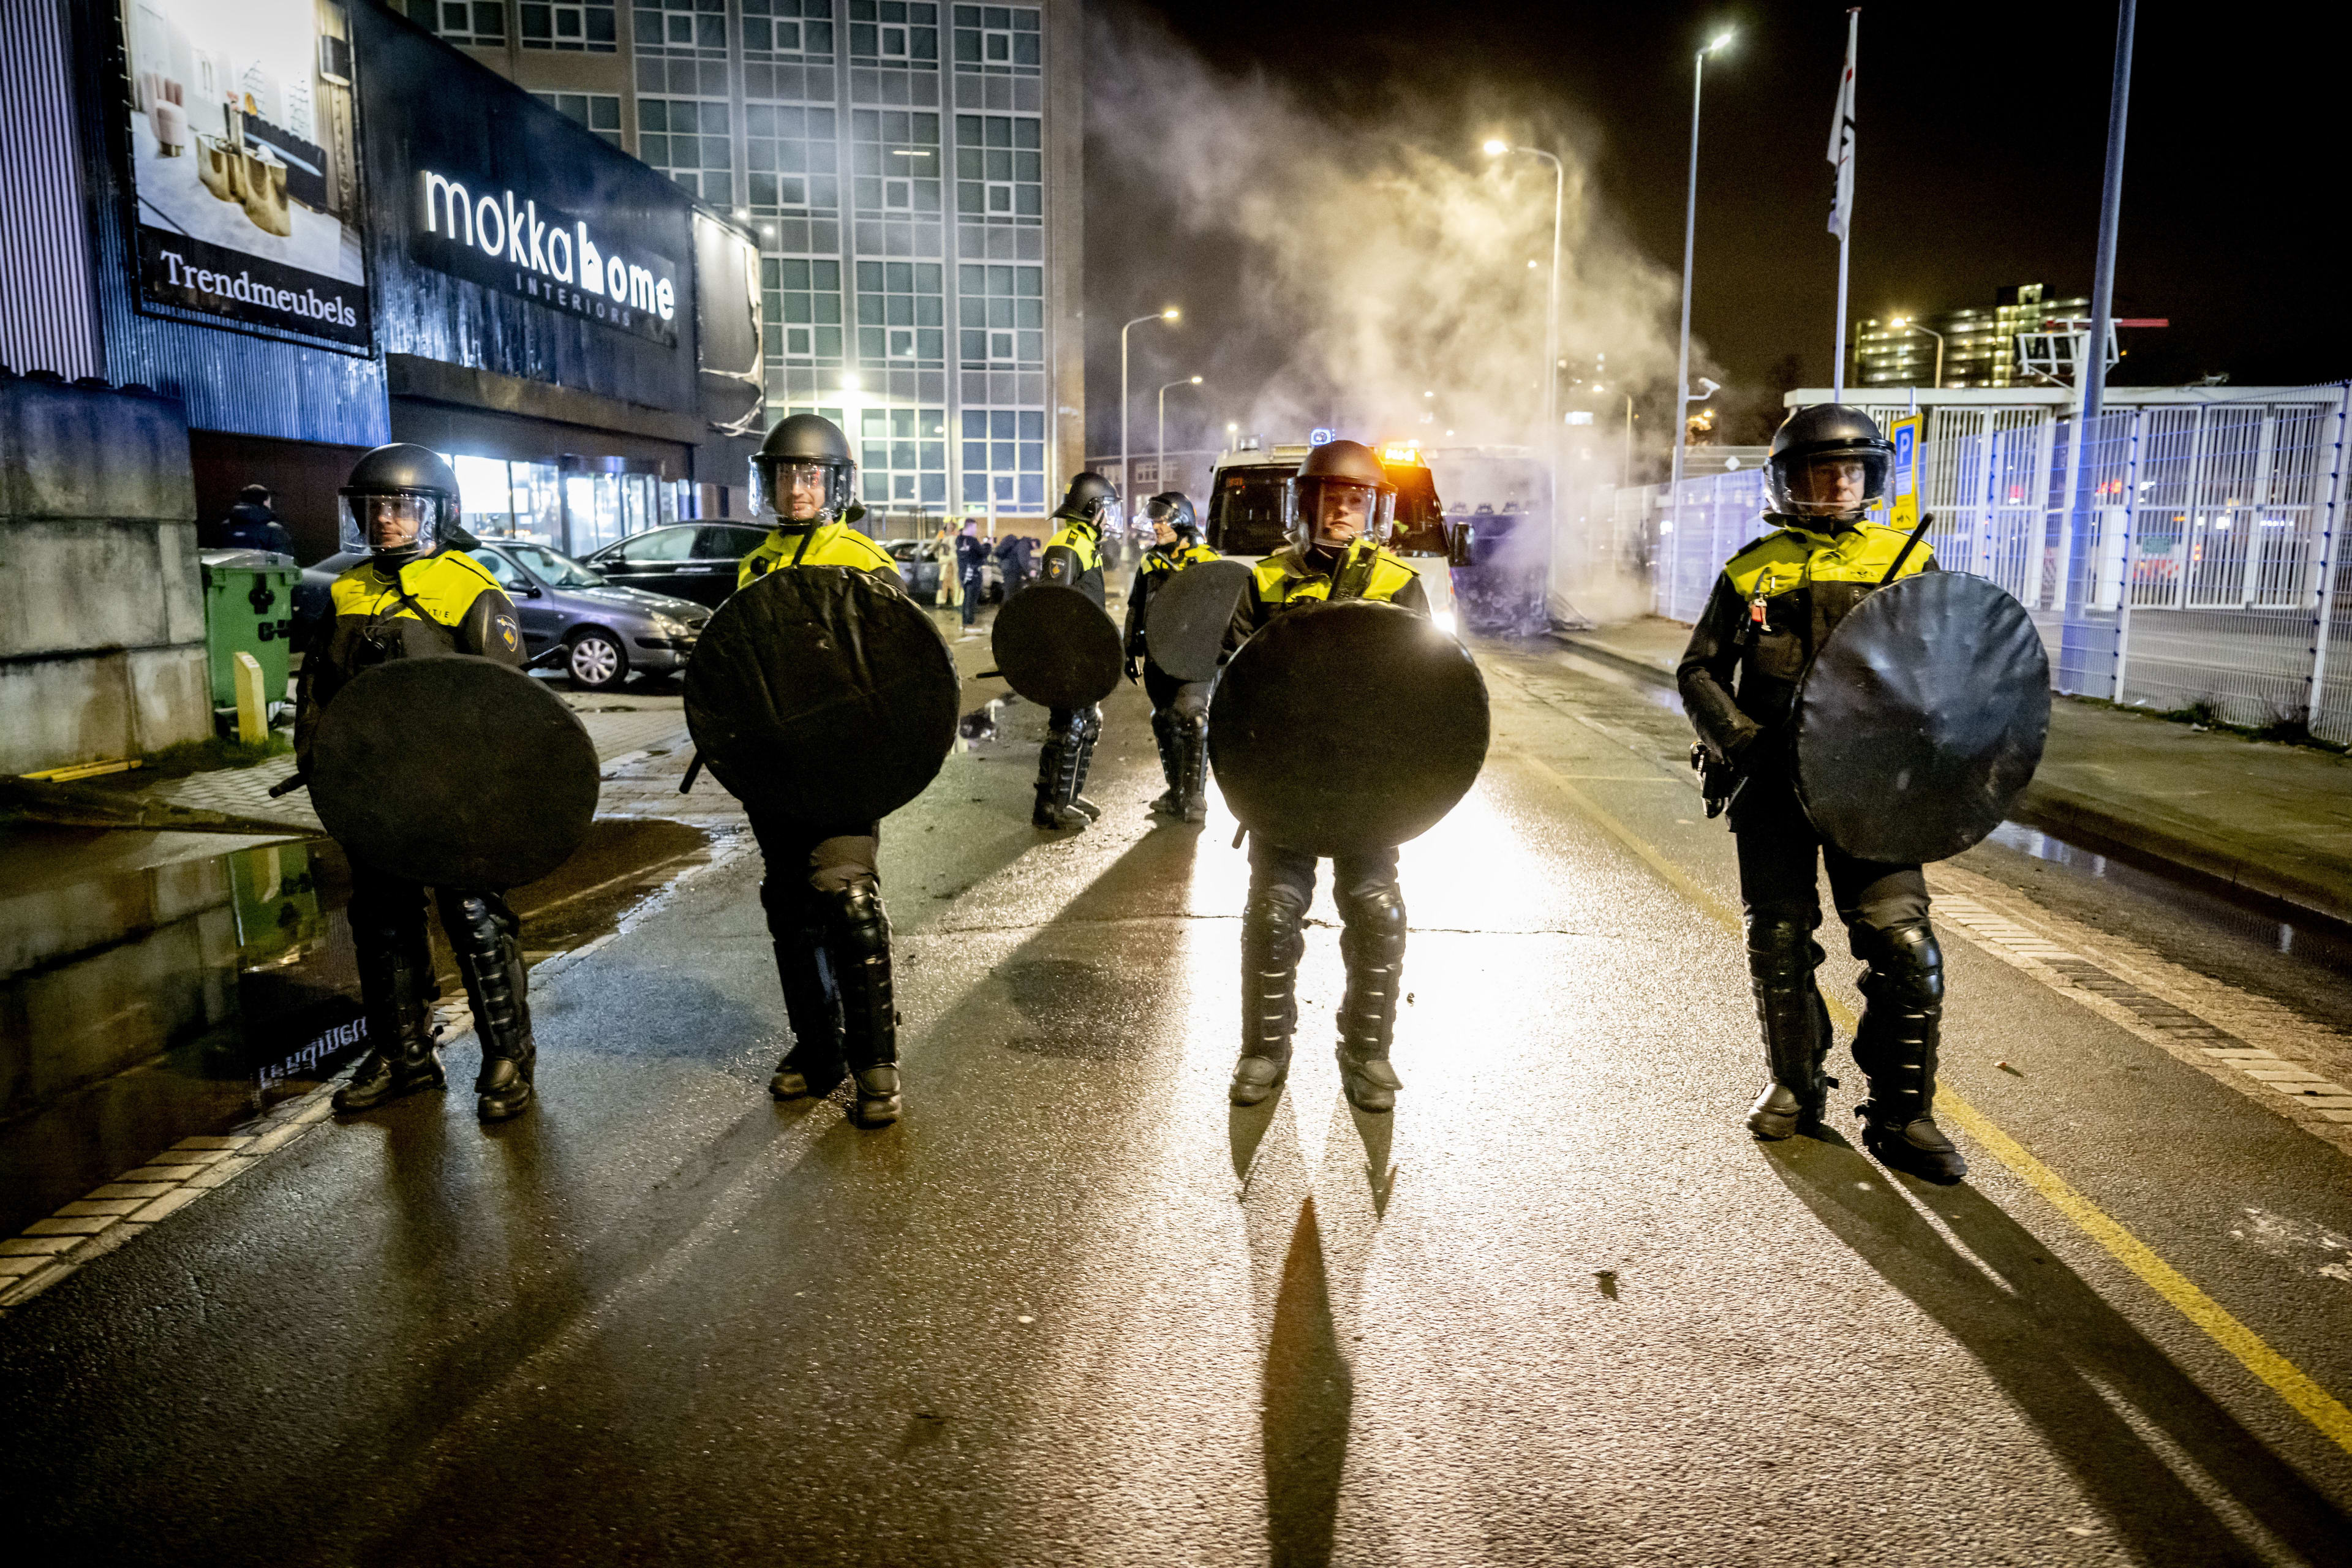 Zes agenten gewond door rellen Den Haag, één aangereden door politieauto